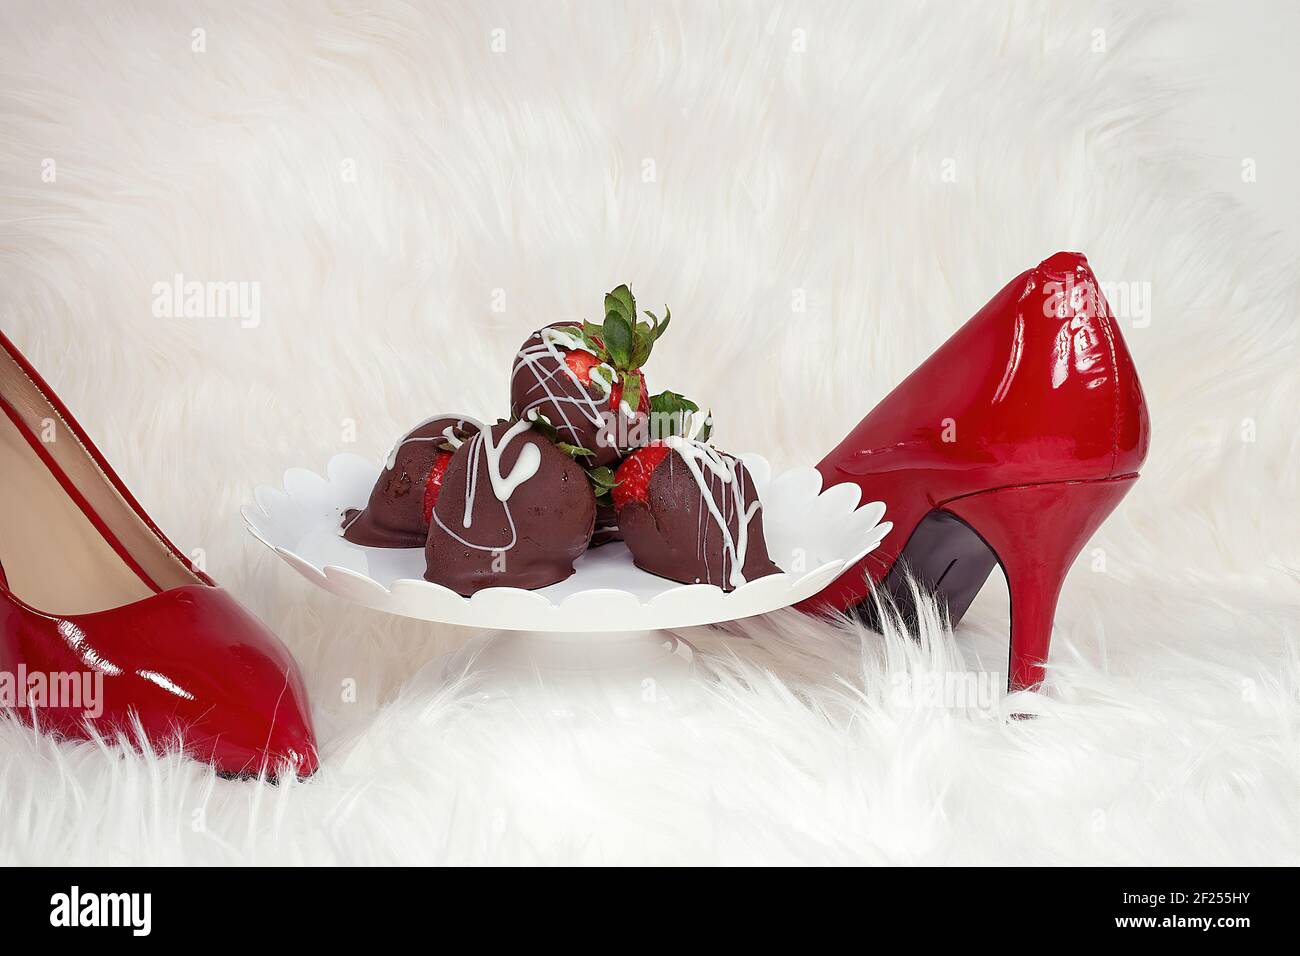 Fraises enrobées de chocolat sur un plat sur socle en fourrure blanche avec pompes rouges Banque D'Images